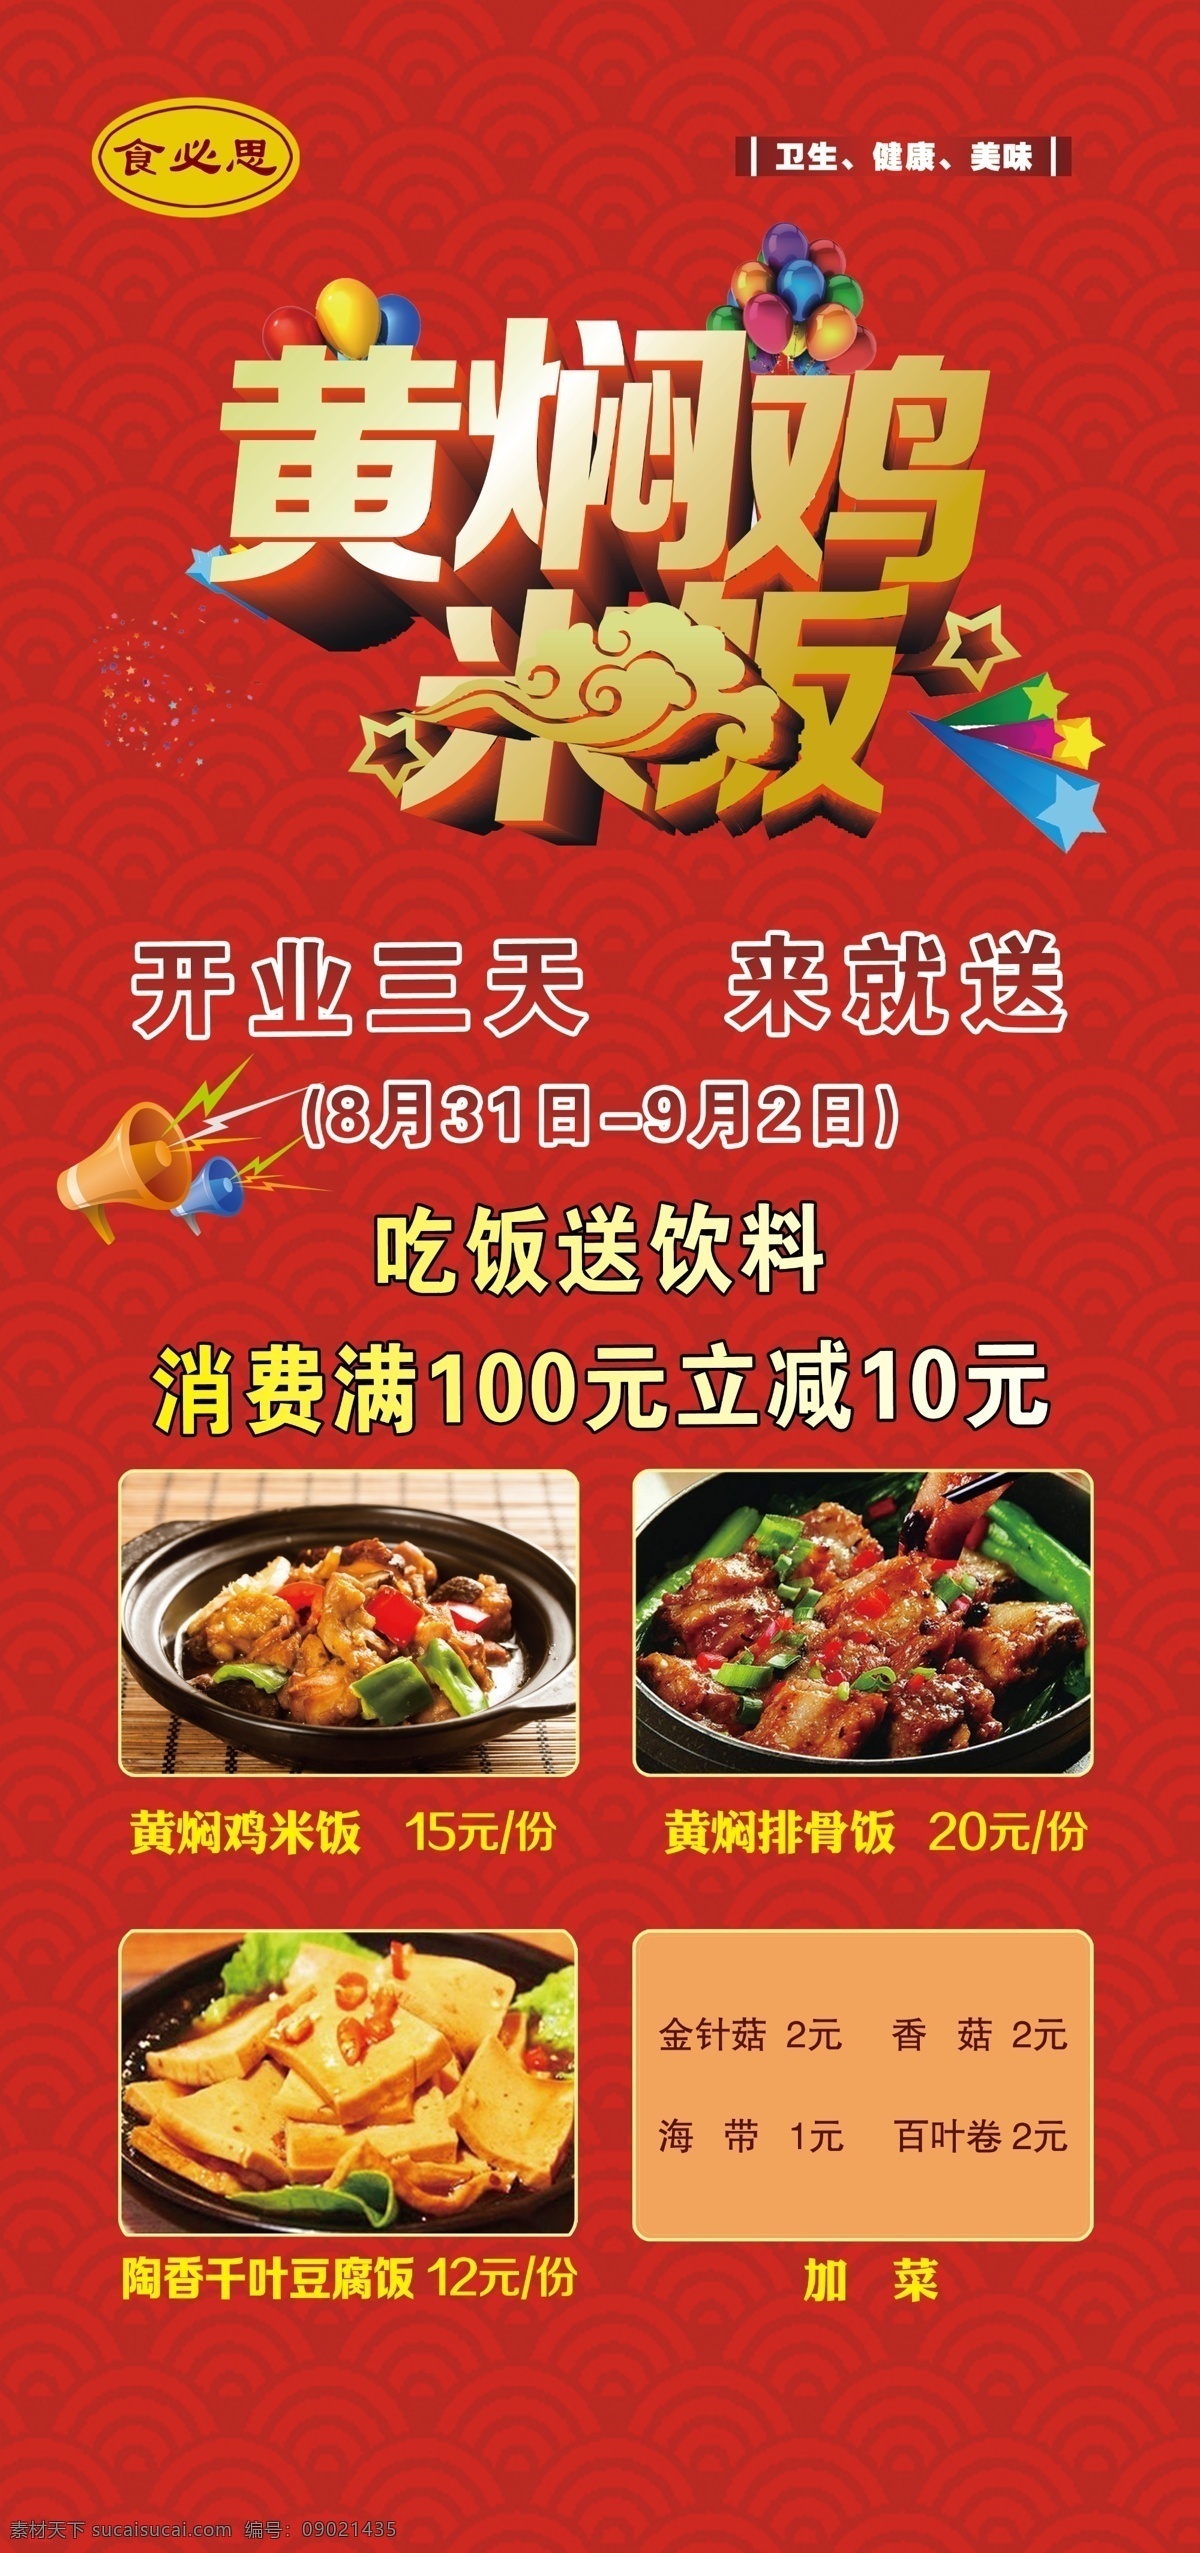 黄焖鸡米饭 开业广告 促销 活动 喜庆